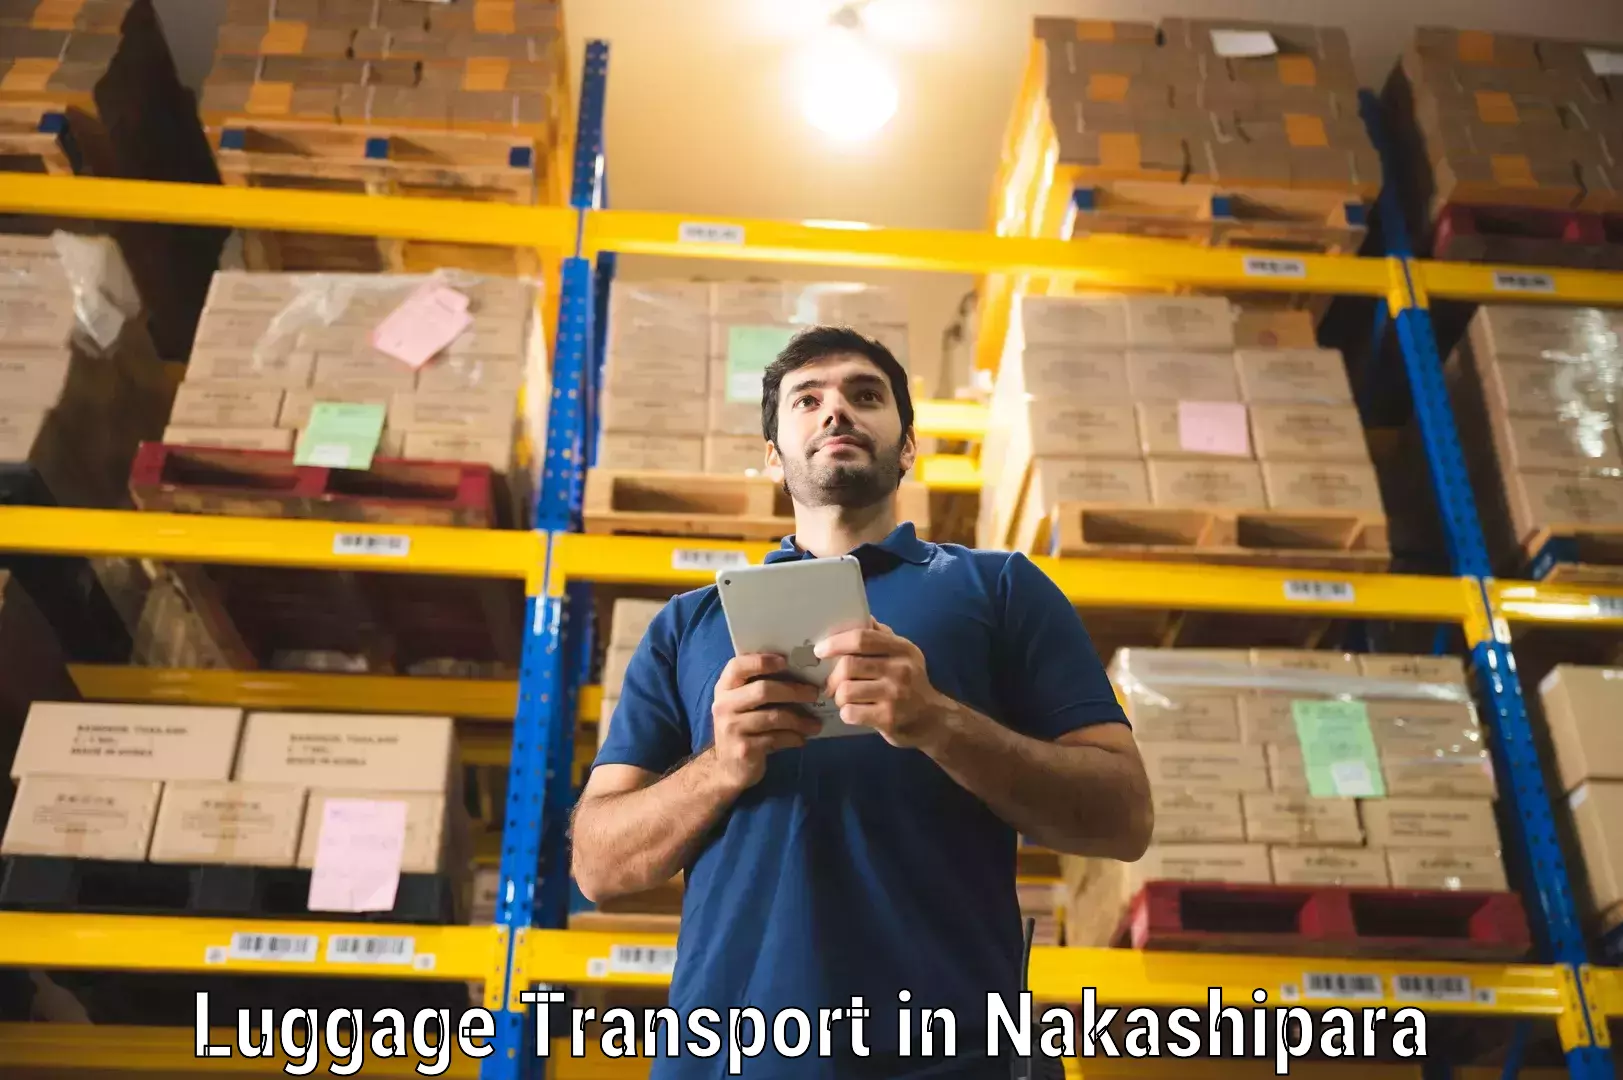 Baggage relocation service in Nakashipara